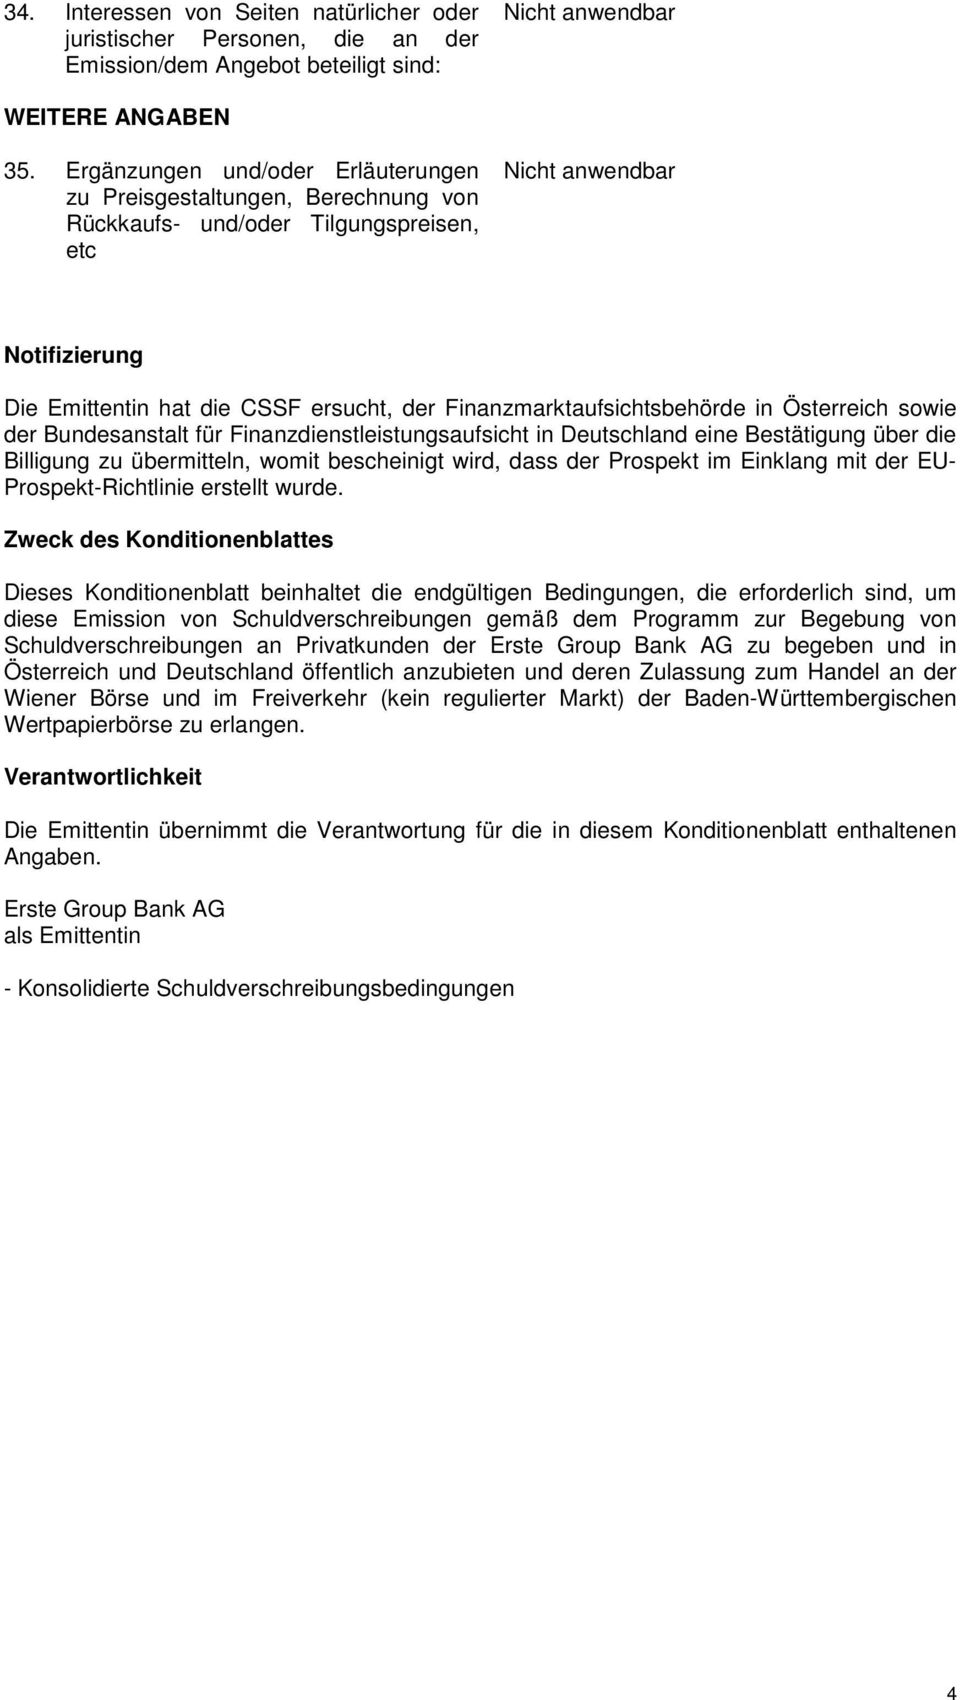 Österreich sowie der Bundesanstalt für Finanzdienstleistungsaufsicht in Deutschland eine Bestätigung über die Billigung zu übermitteln, womit bescheinigt wird, dass der Prospekt im Einklang mit der